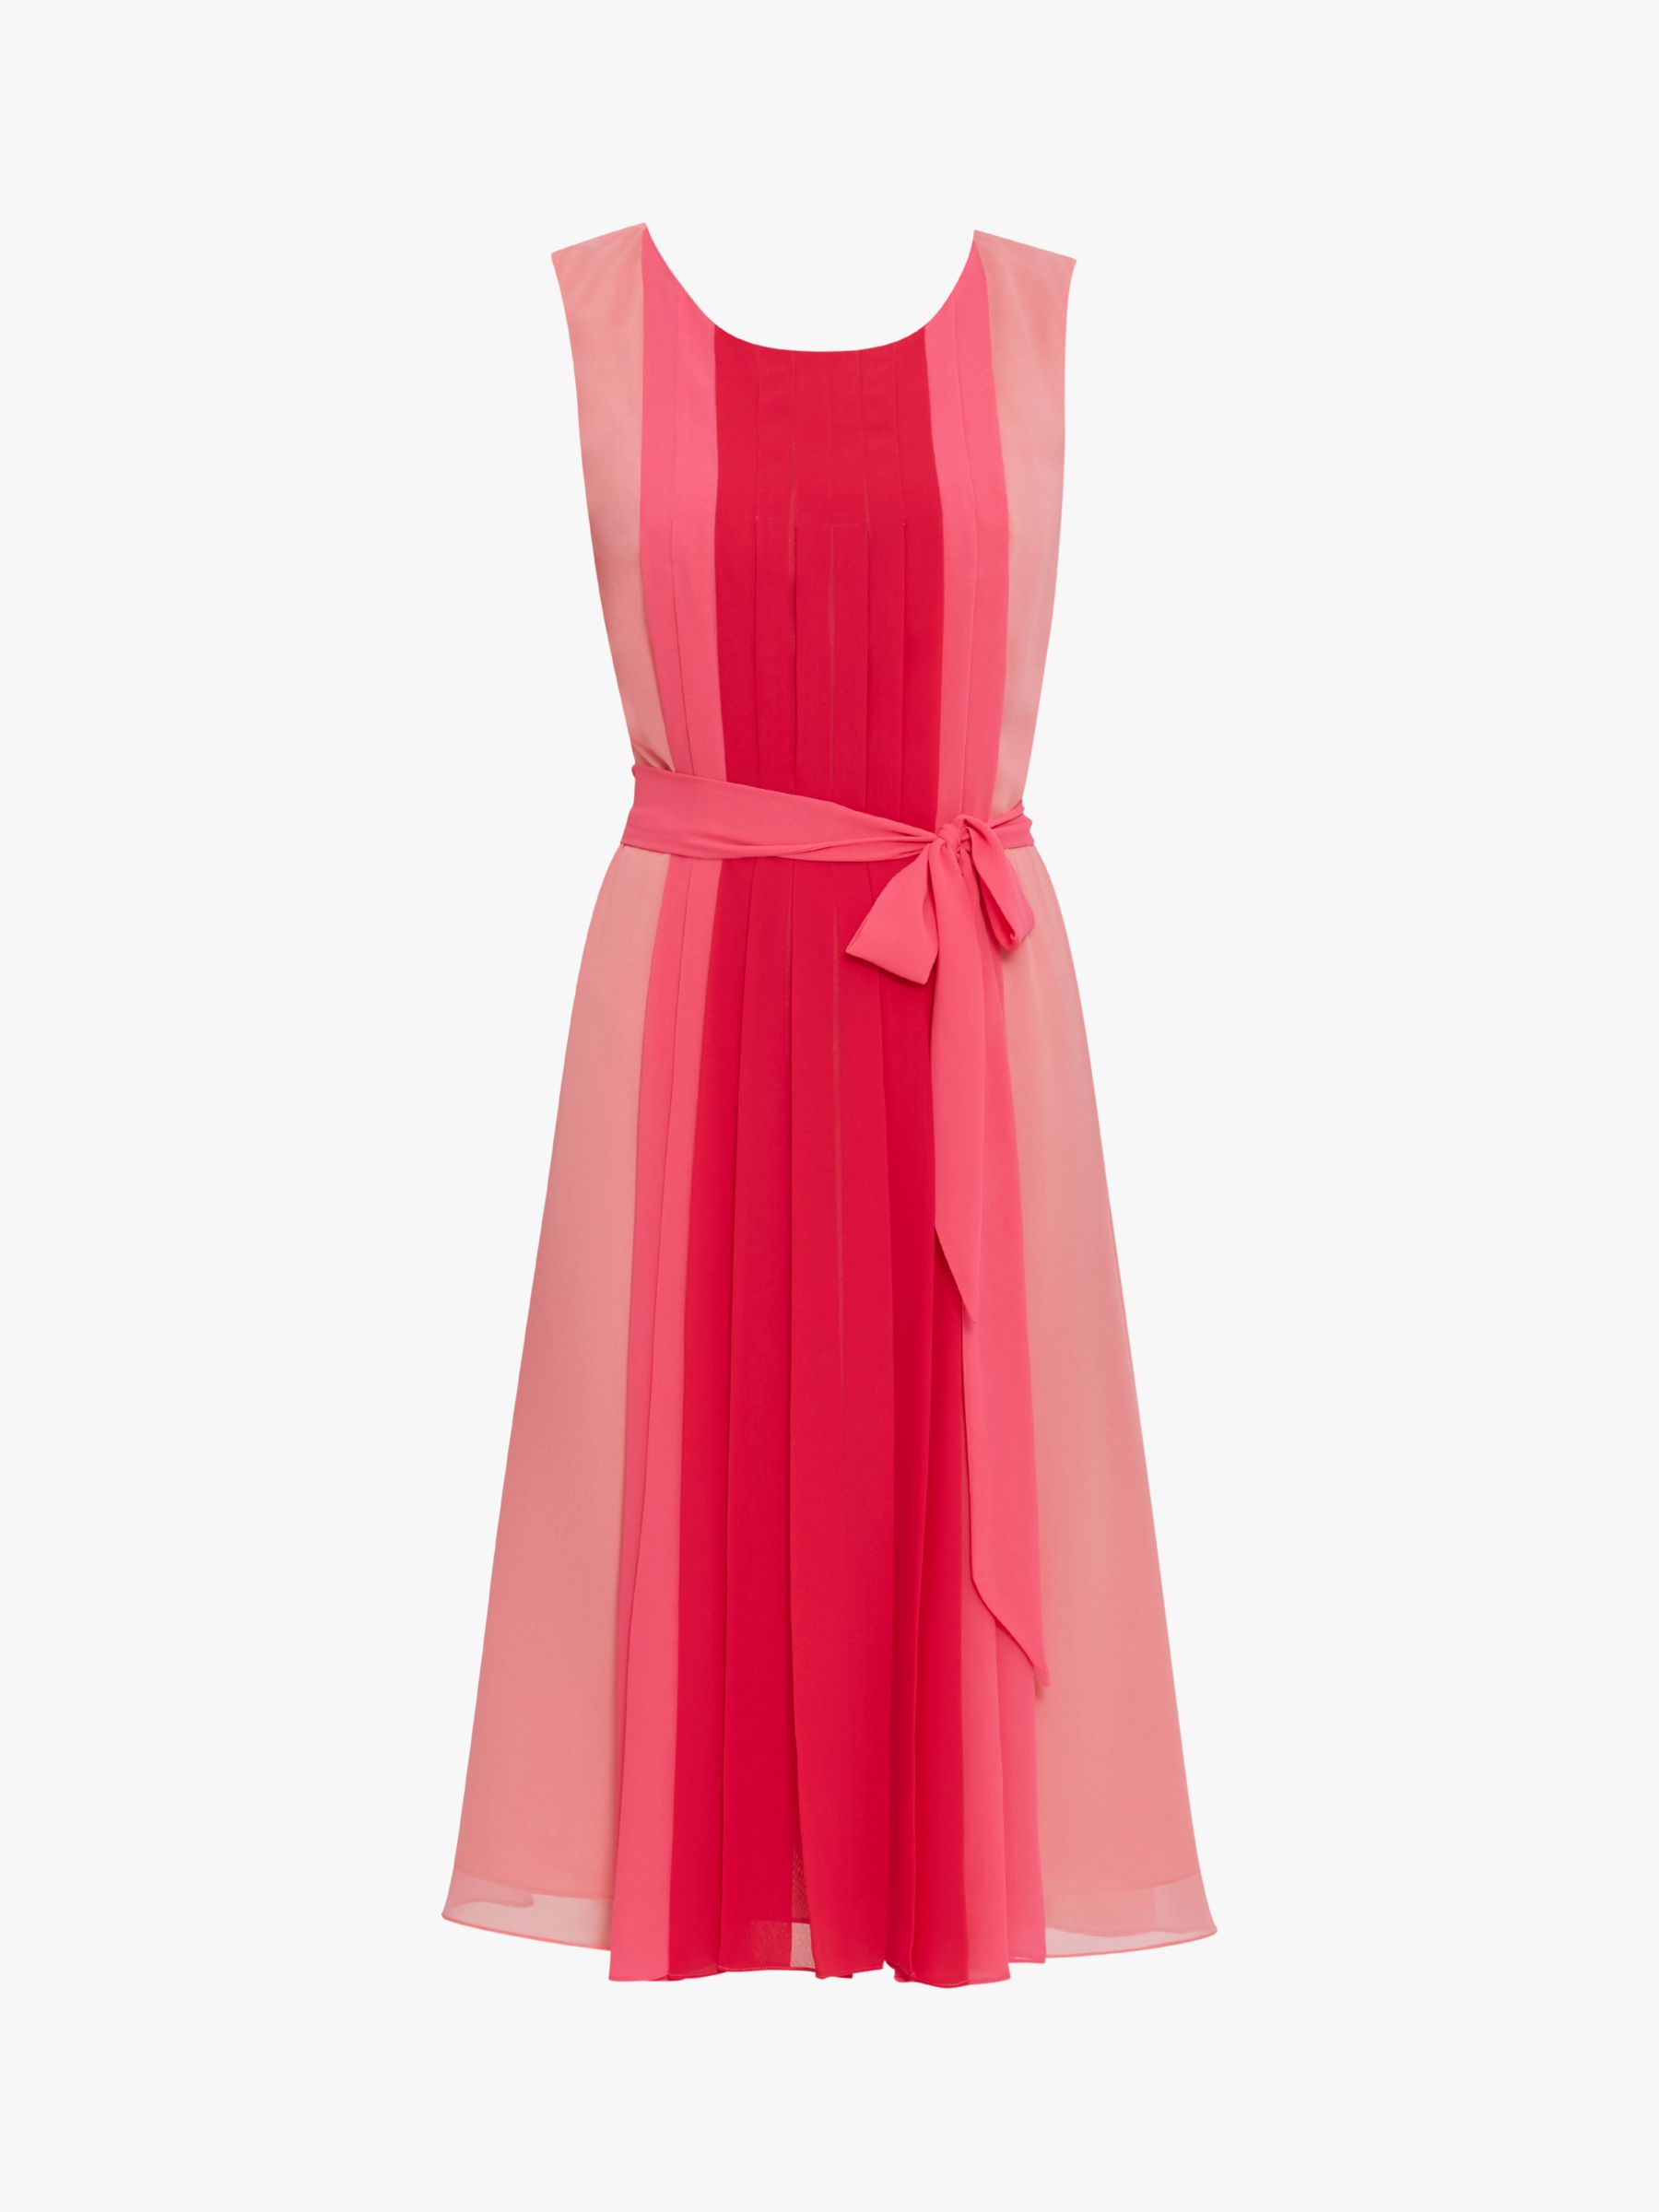 Gina Bacconi Janeen Chiffon Dress, Hot Pink/Multi, 8